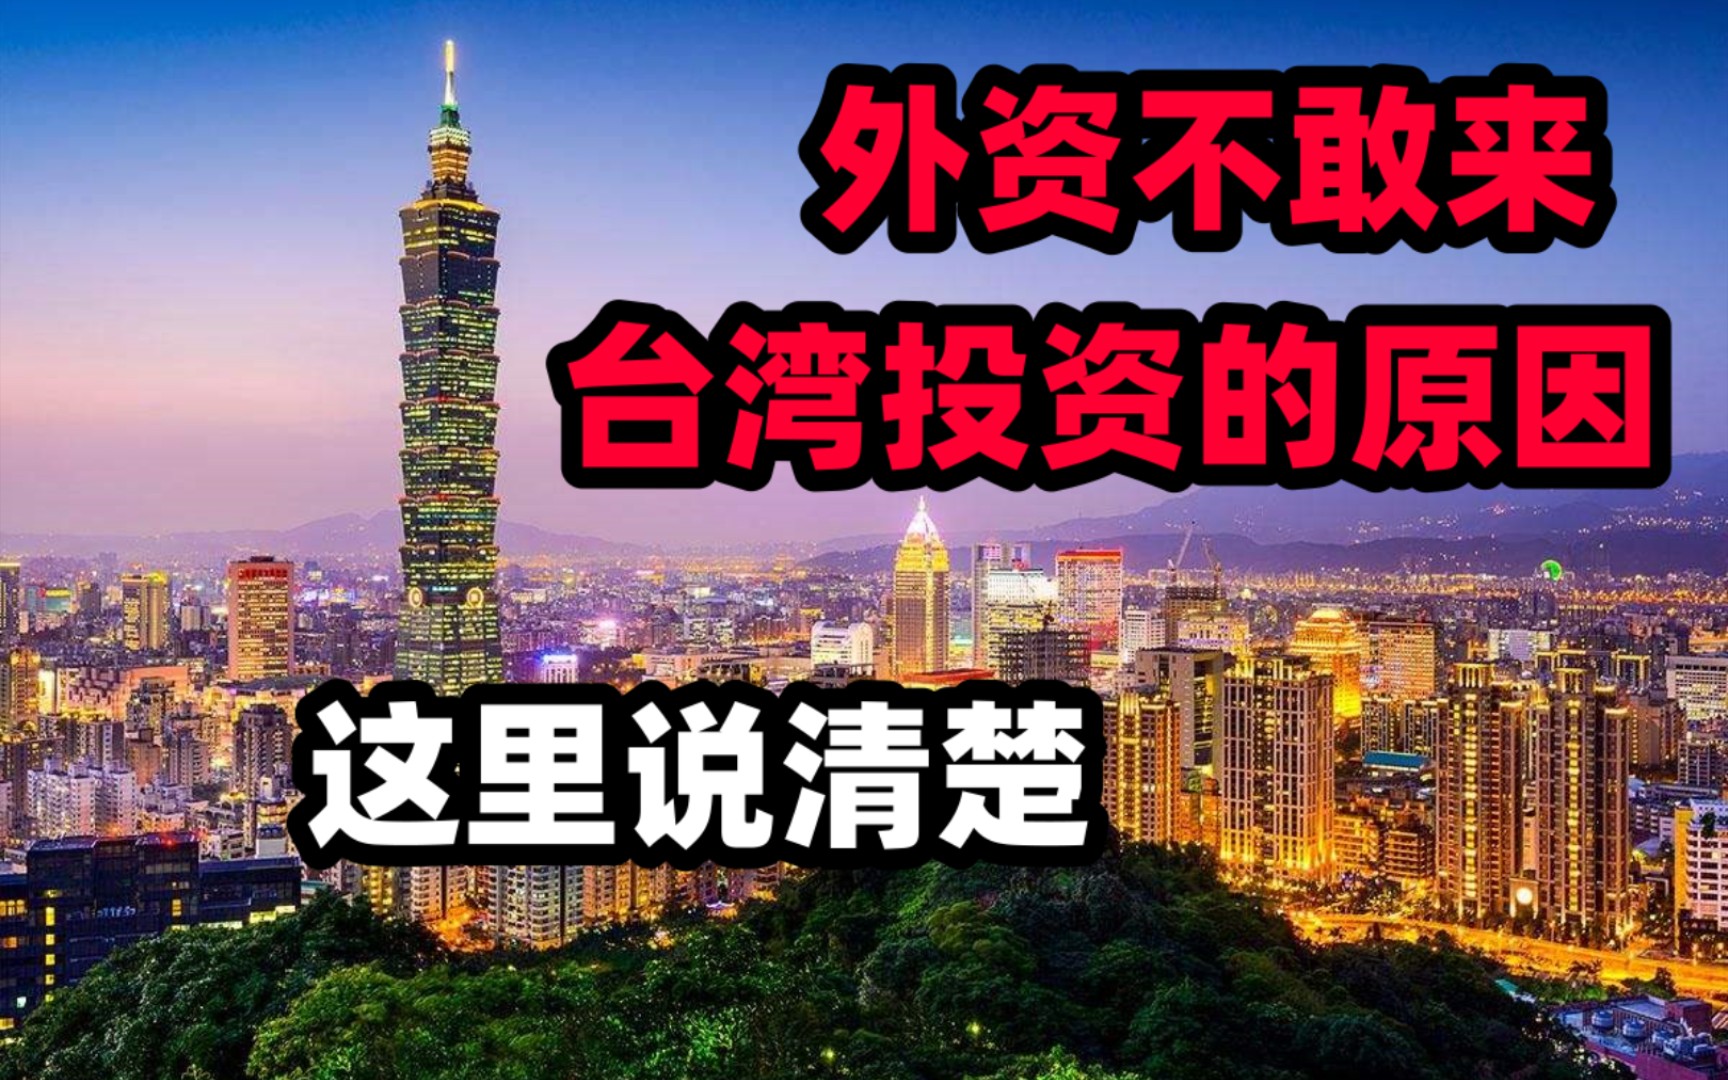 外资不敢来台湾投资的原因  这里说清楚